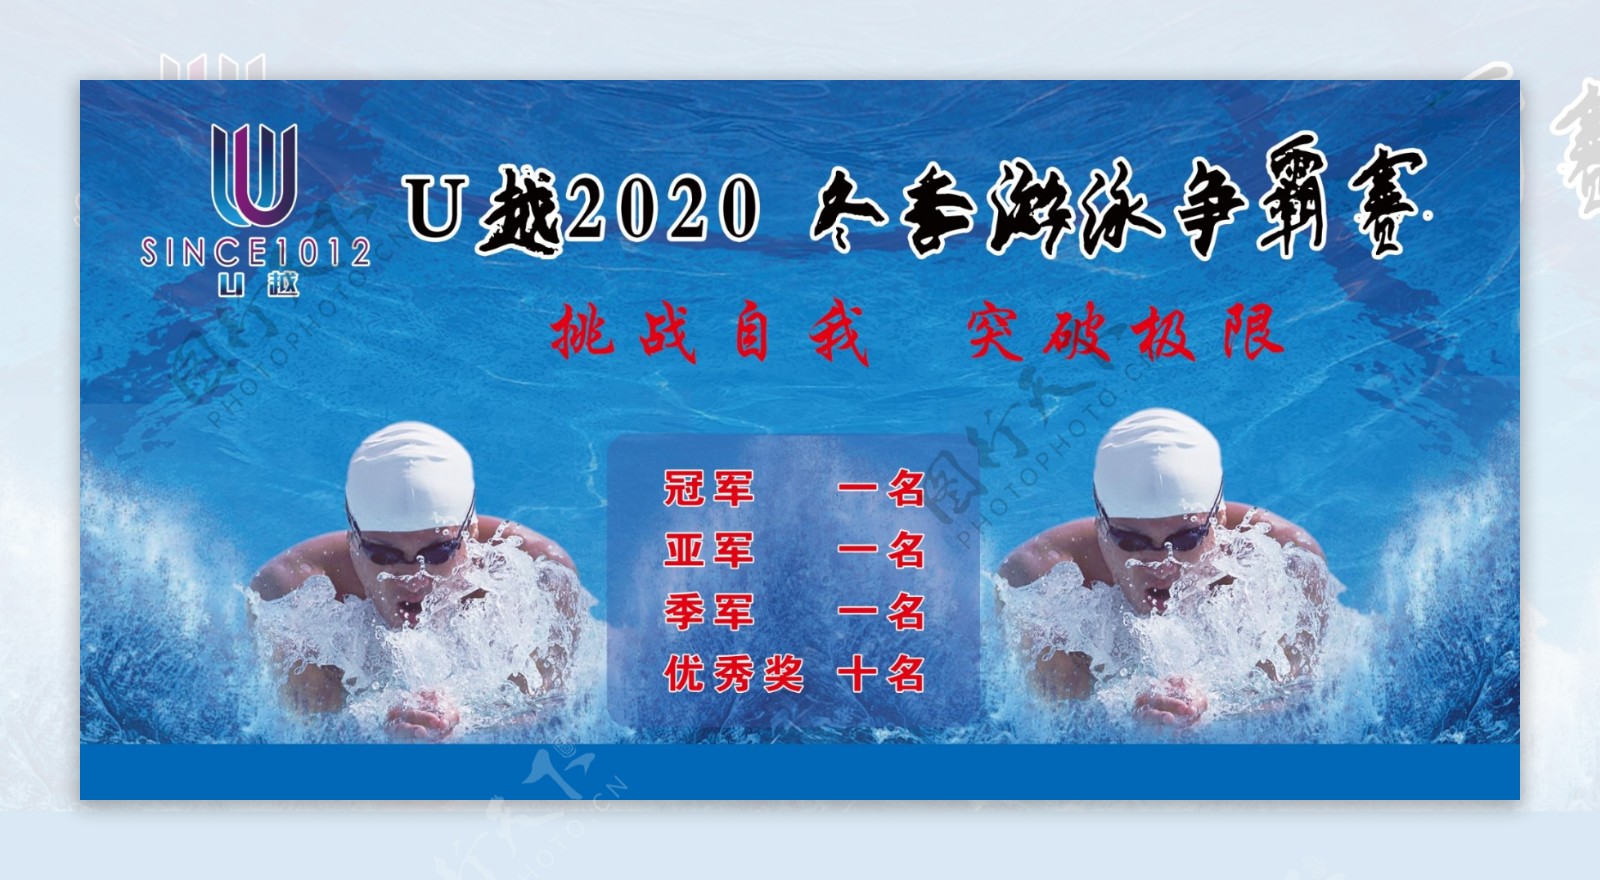 游泳比赛海报图片